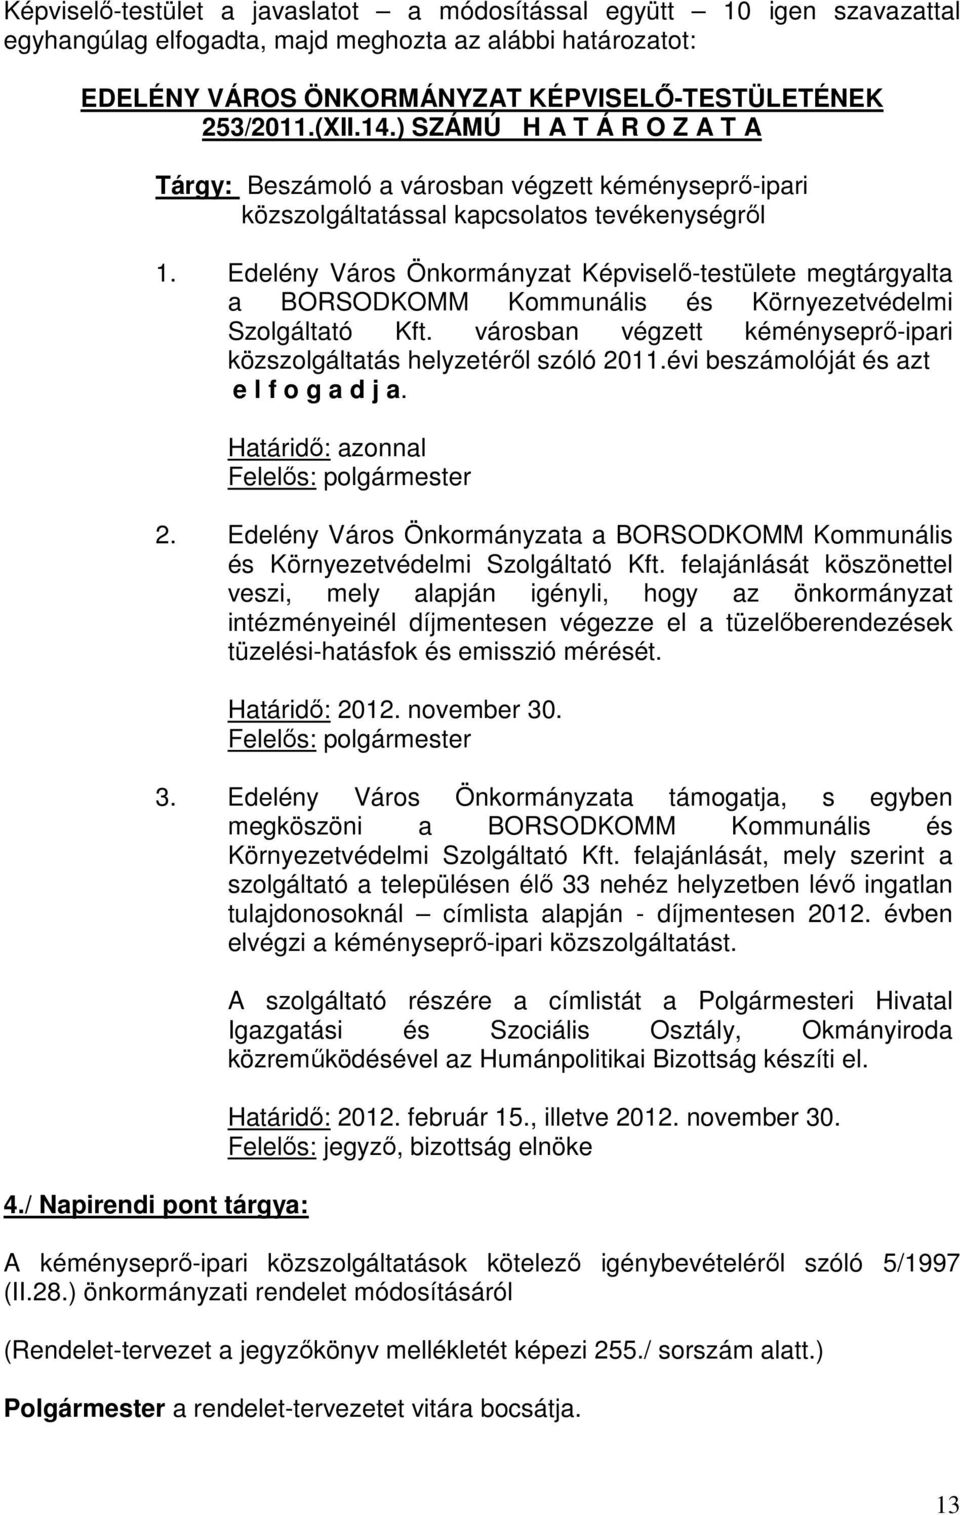 Edelény Város Önkormányzat Képviselő-testülete megtárgyalta a BORSODKOMM Kommunális és Környezetvédelmi Szolgáltató Kft. városban végzett kéményseprő-ipari közszolgáltatás helyzetéről szóló 2011.